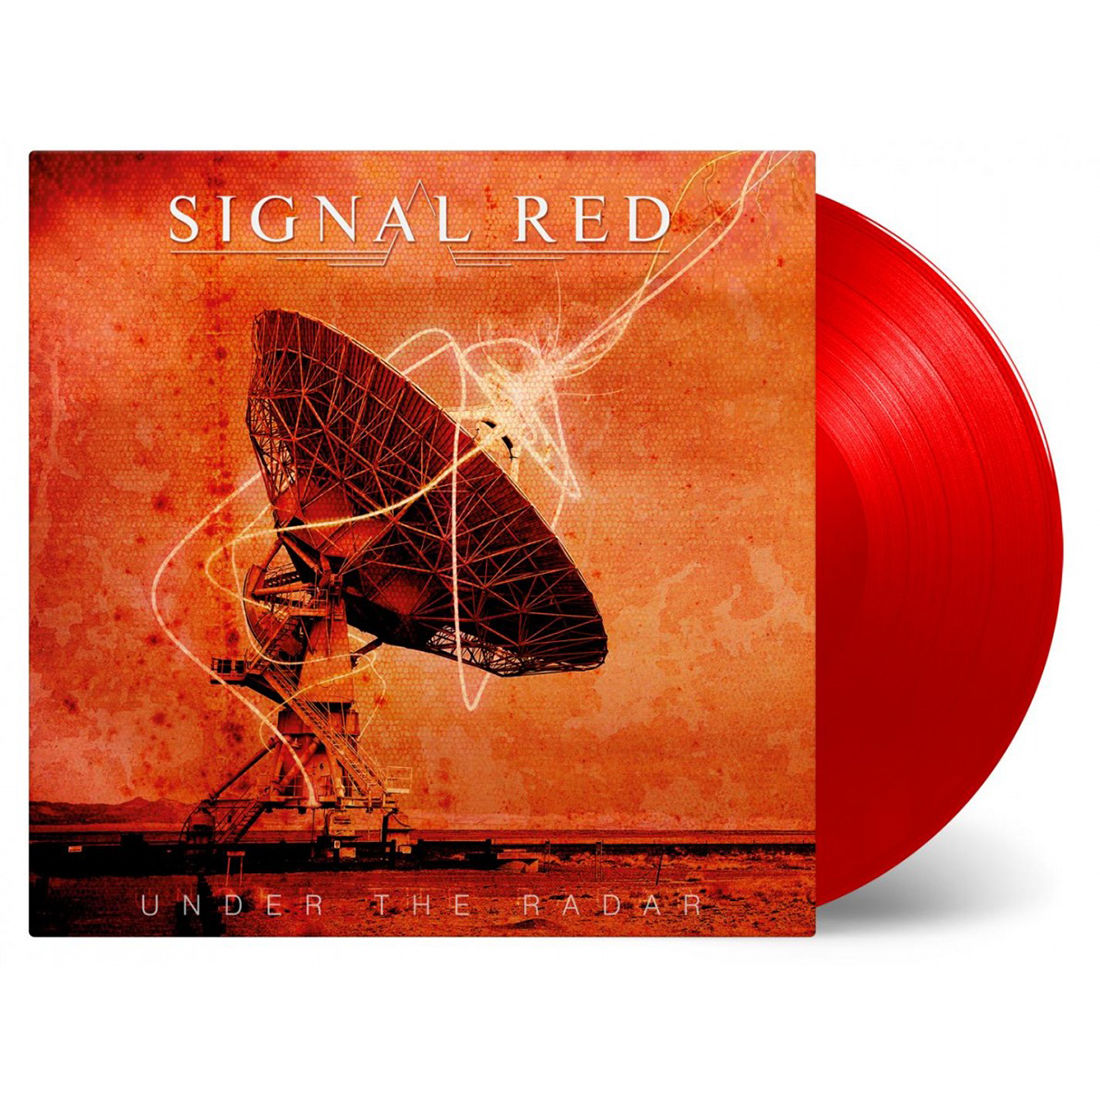 Under The Radar: Limited Red Vinyl 2LP